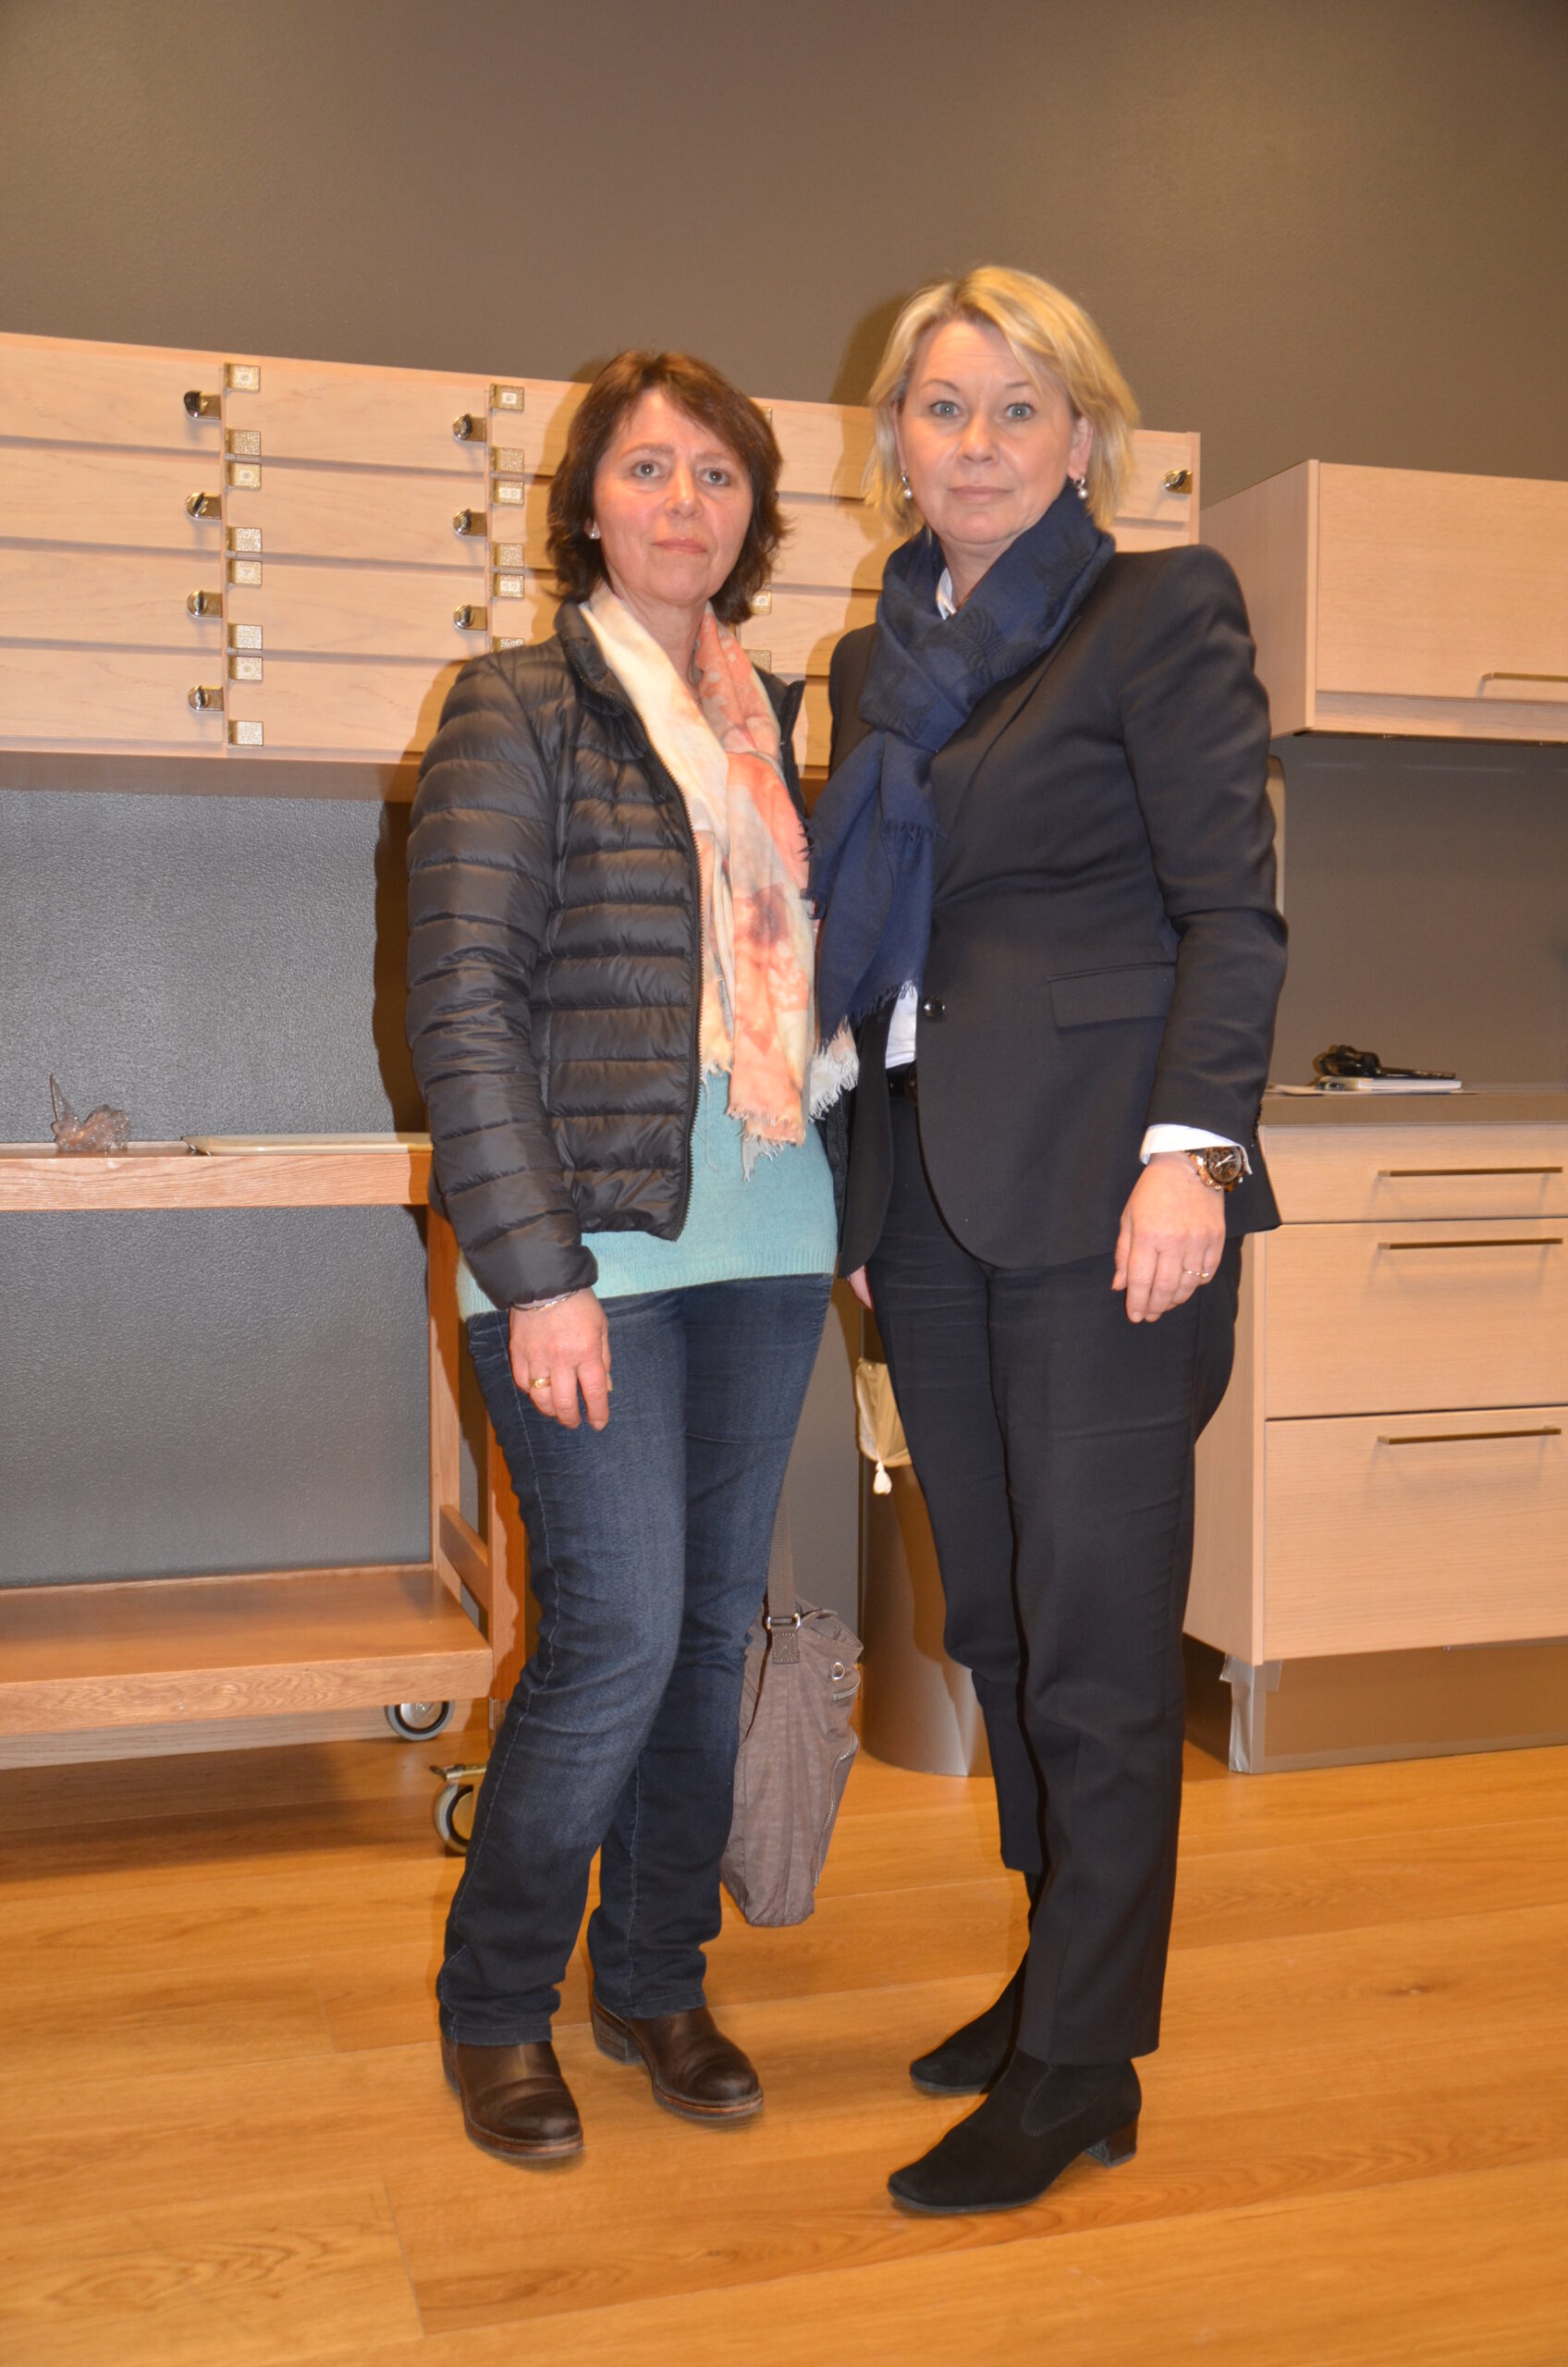 Tillitsvalgt Unni Garberg (venstre) i Ello (Lilleborg) fortalte næringsminister Monica Mæland at Ello er en overskuddsbedrift, og at de ansatte er klare til omstilling og effektivisering for å redde arbeidsplassene i Norge.